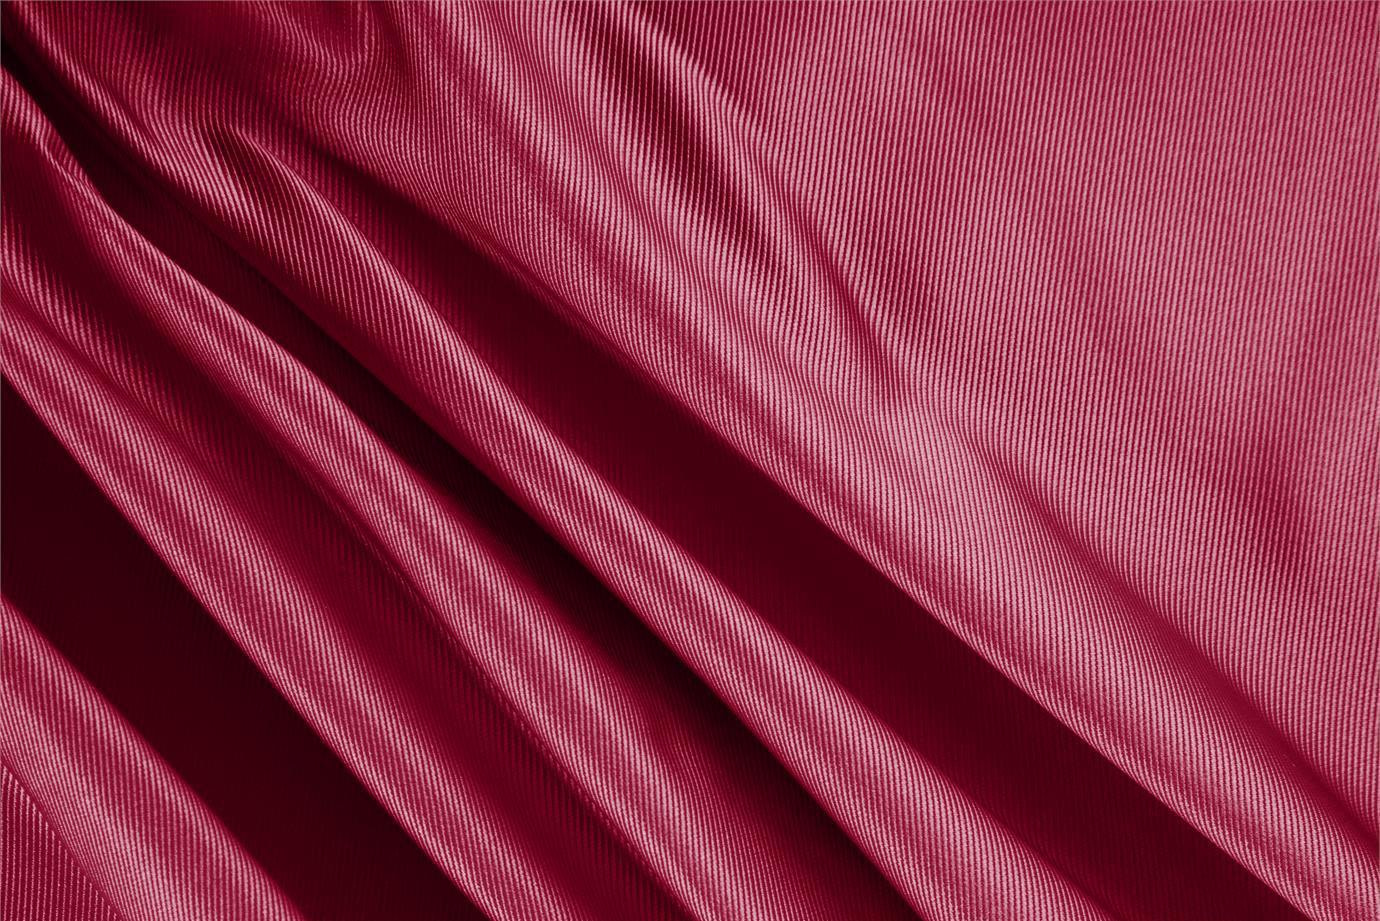 Tessuto Dogaressa Rosso Rubino in Seta per Abbigliamento UN000025